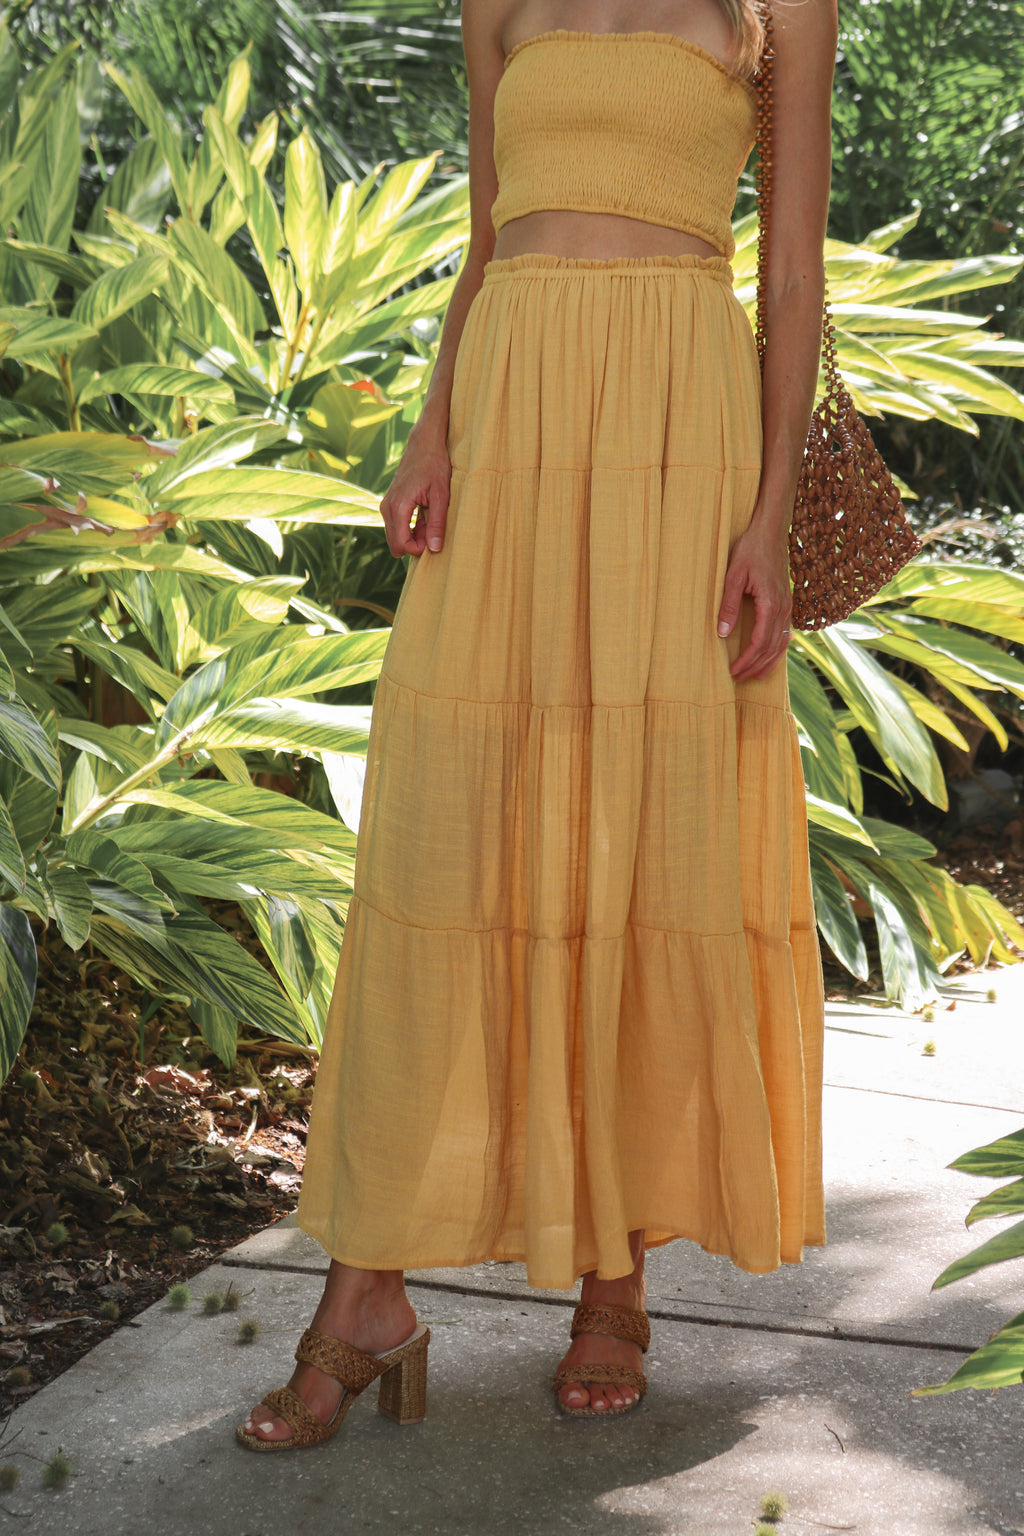 Sunny Daze Skirt in Sunflower